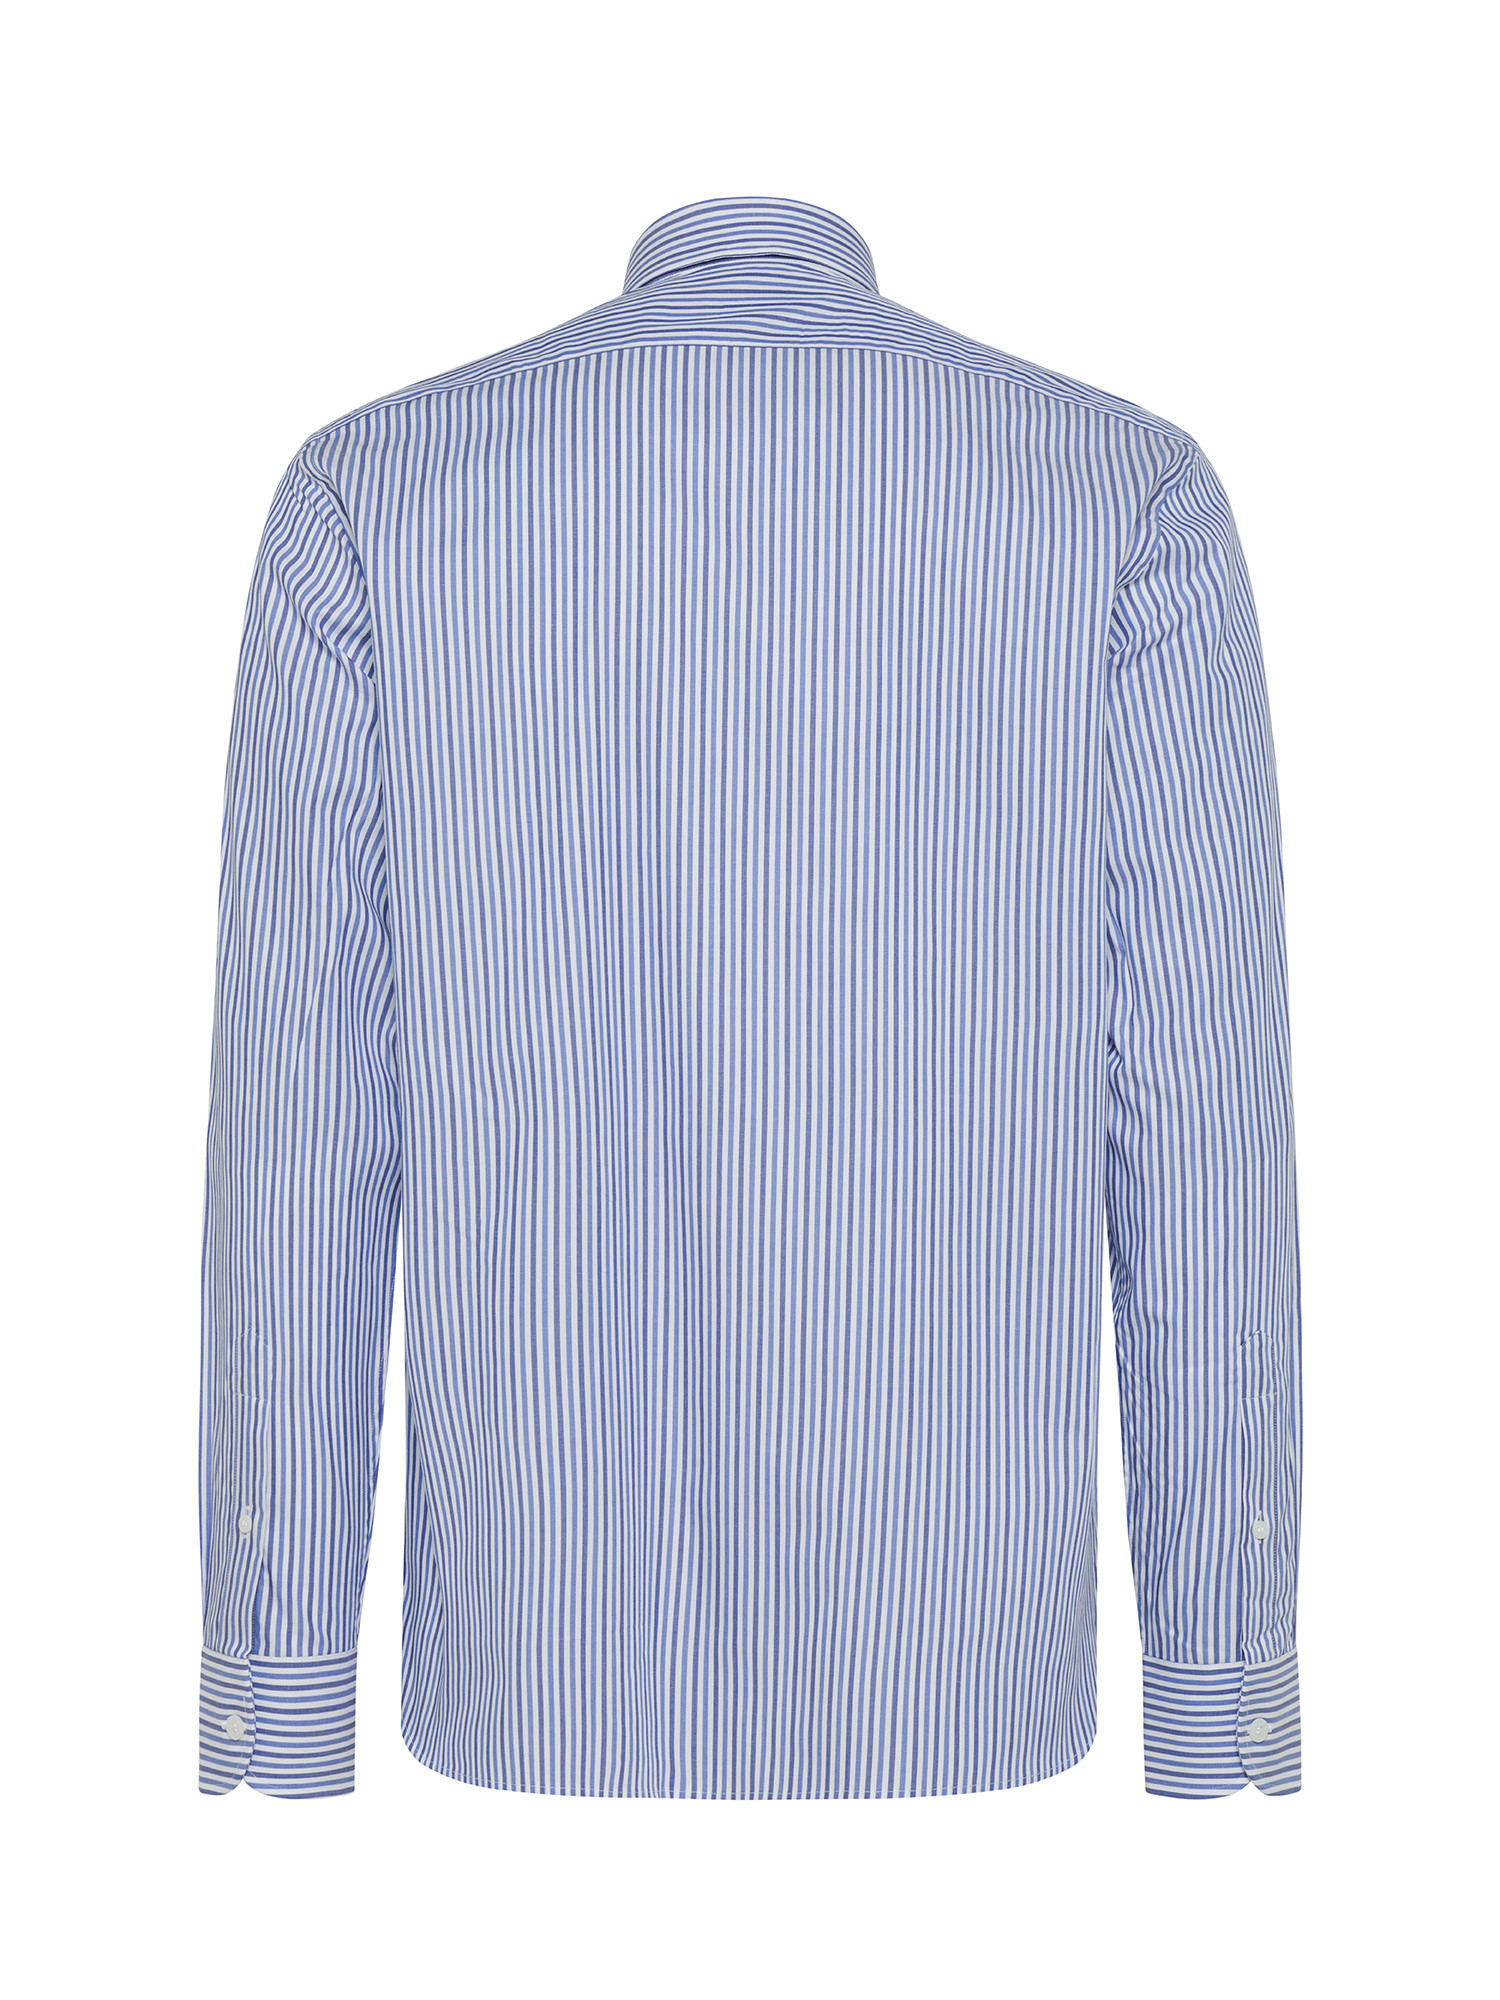 Luca D'Altieri - Camicia tailor fit in puro cotone, Blu, large image number 1